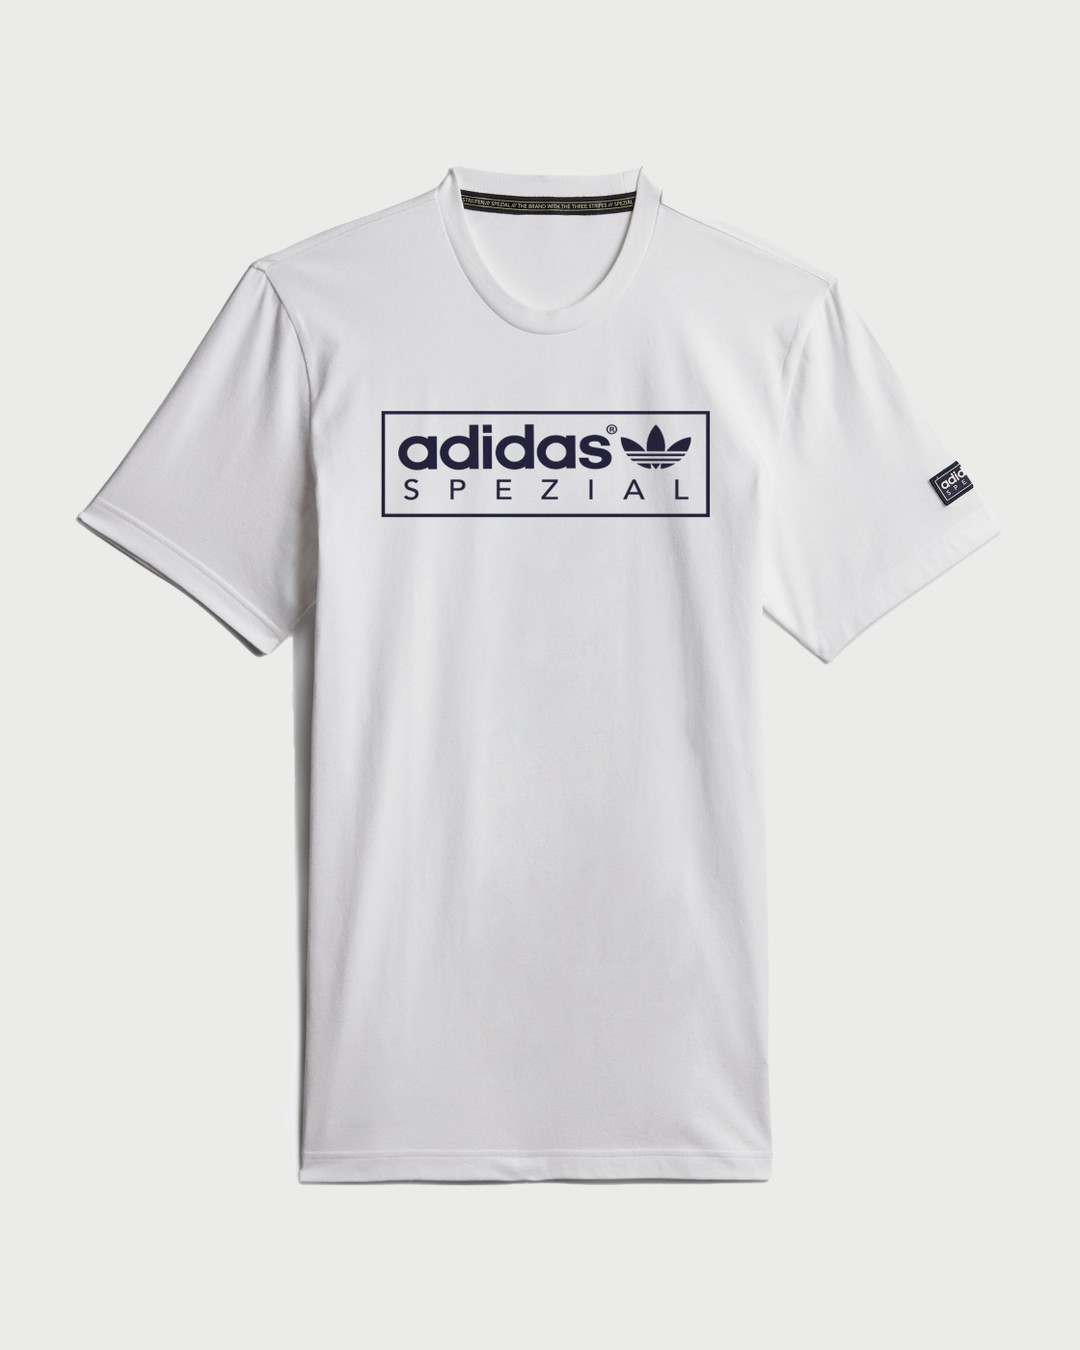 Adidas – Tee Nord Spezial White - T-shirts - White - Image 1